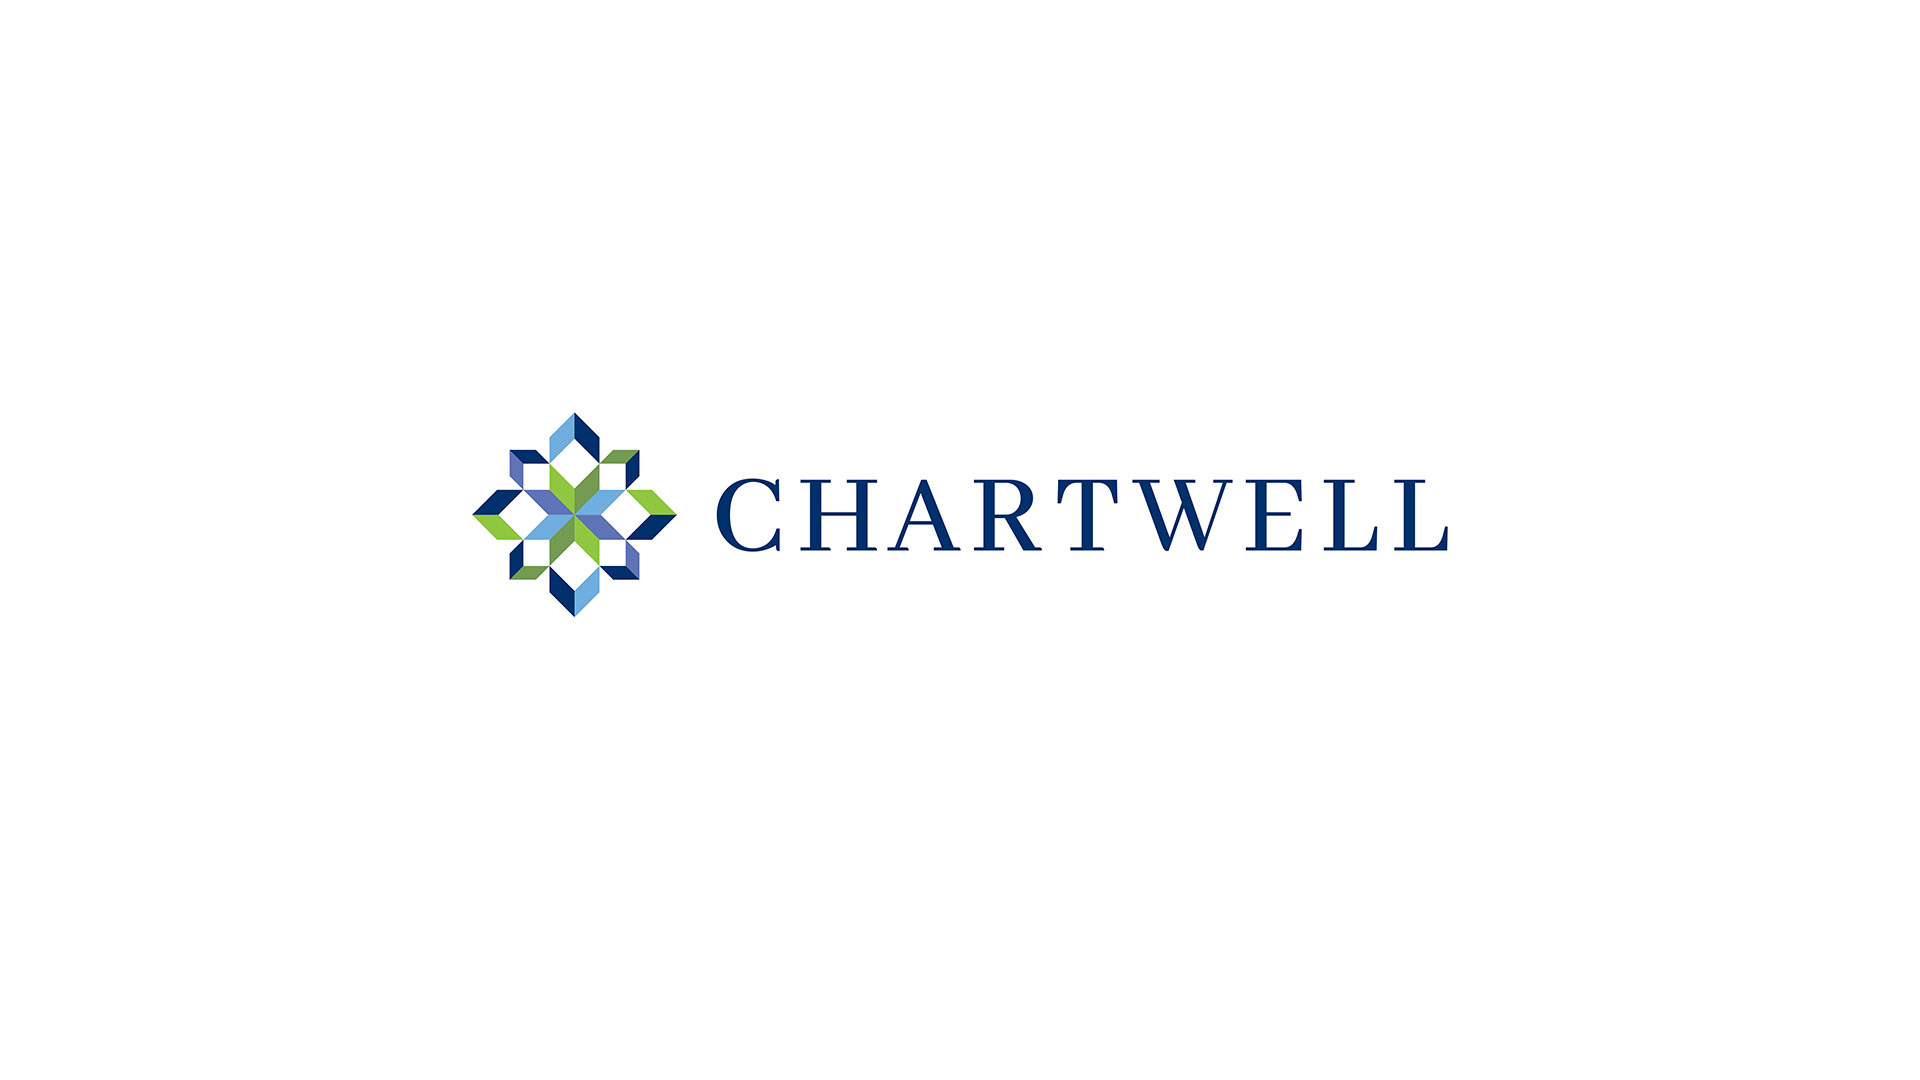 chartwell horizontal logo design boston on white